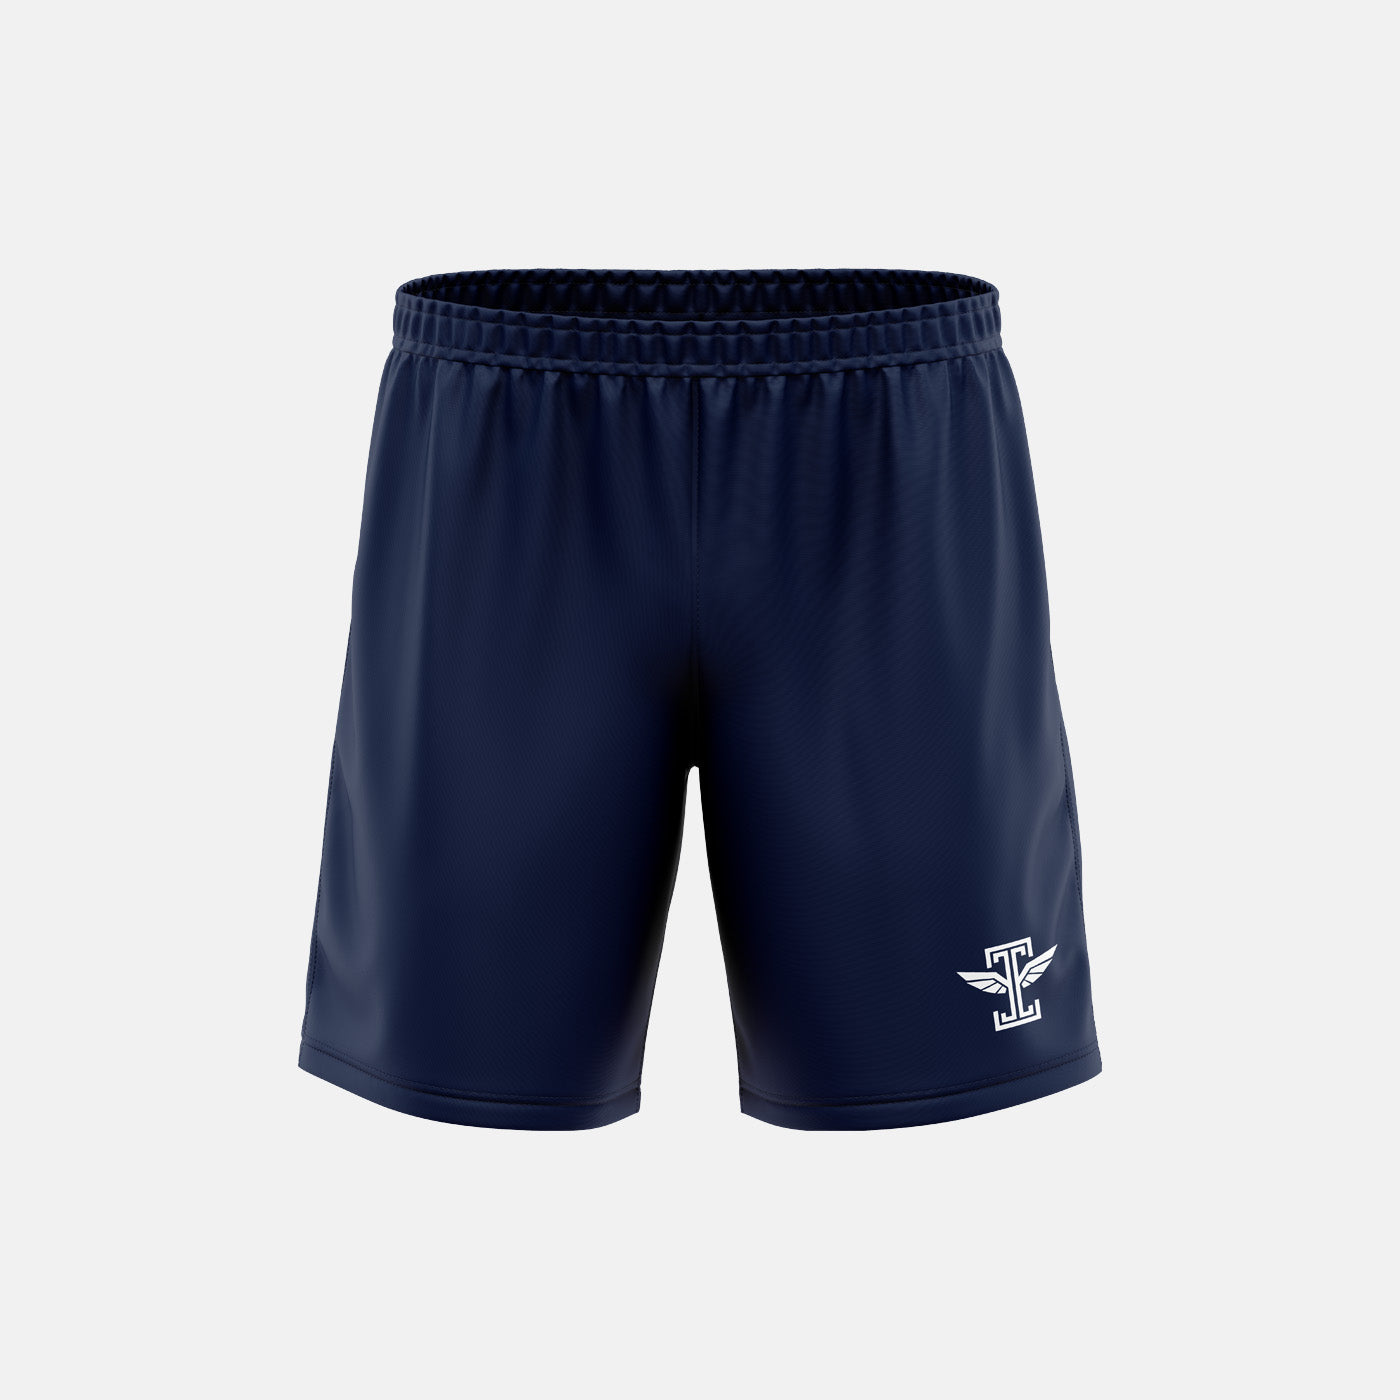 Hale End Athletic Blue Shorts